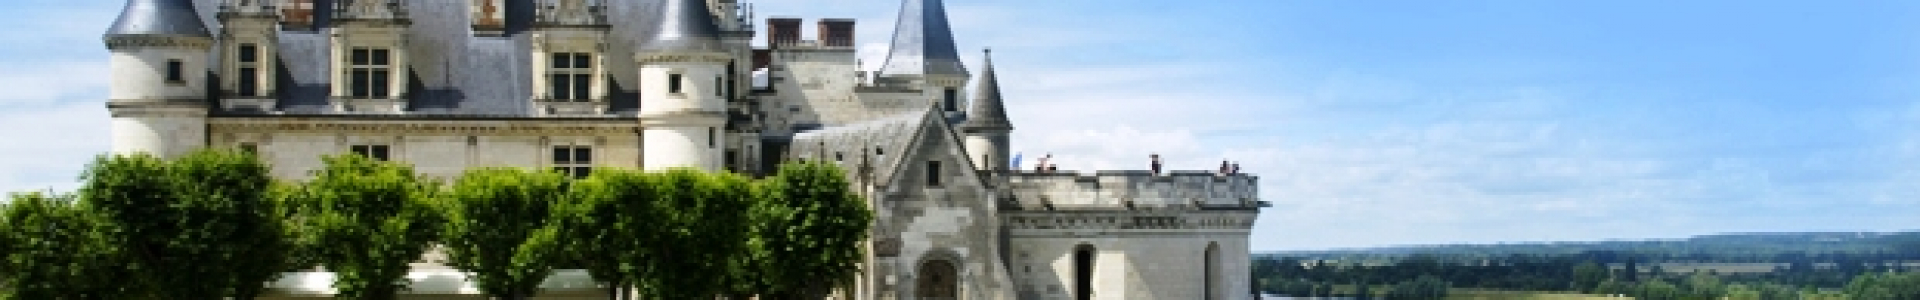 Voyages SNCF : week-ends de charme, belles demeures & châteaux en France